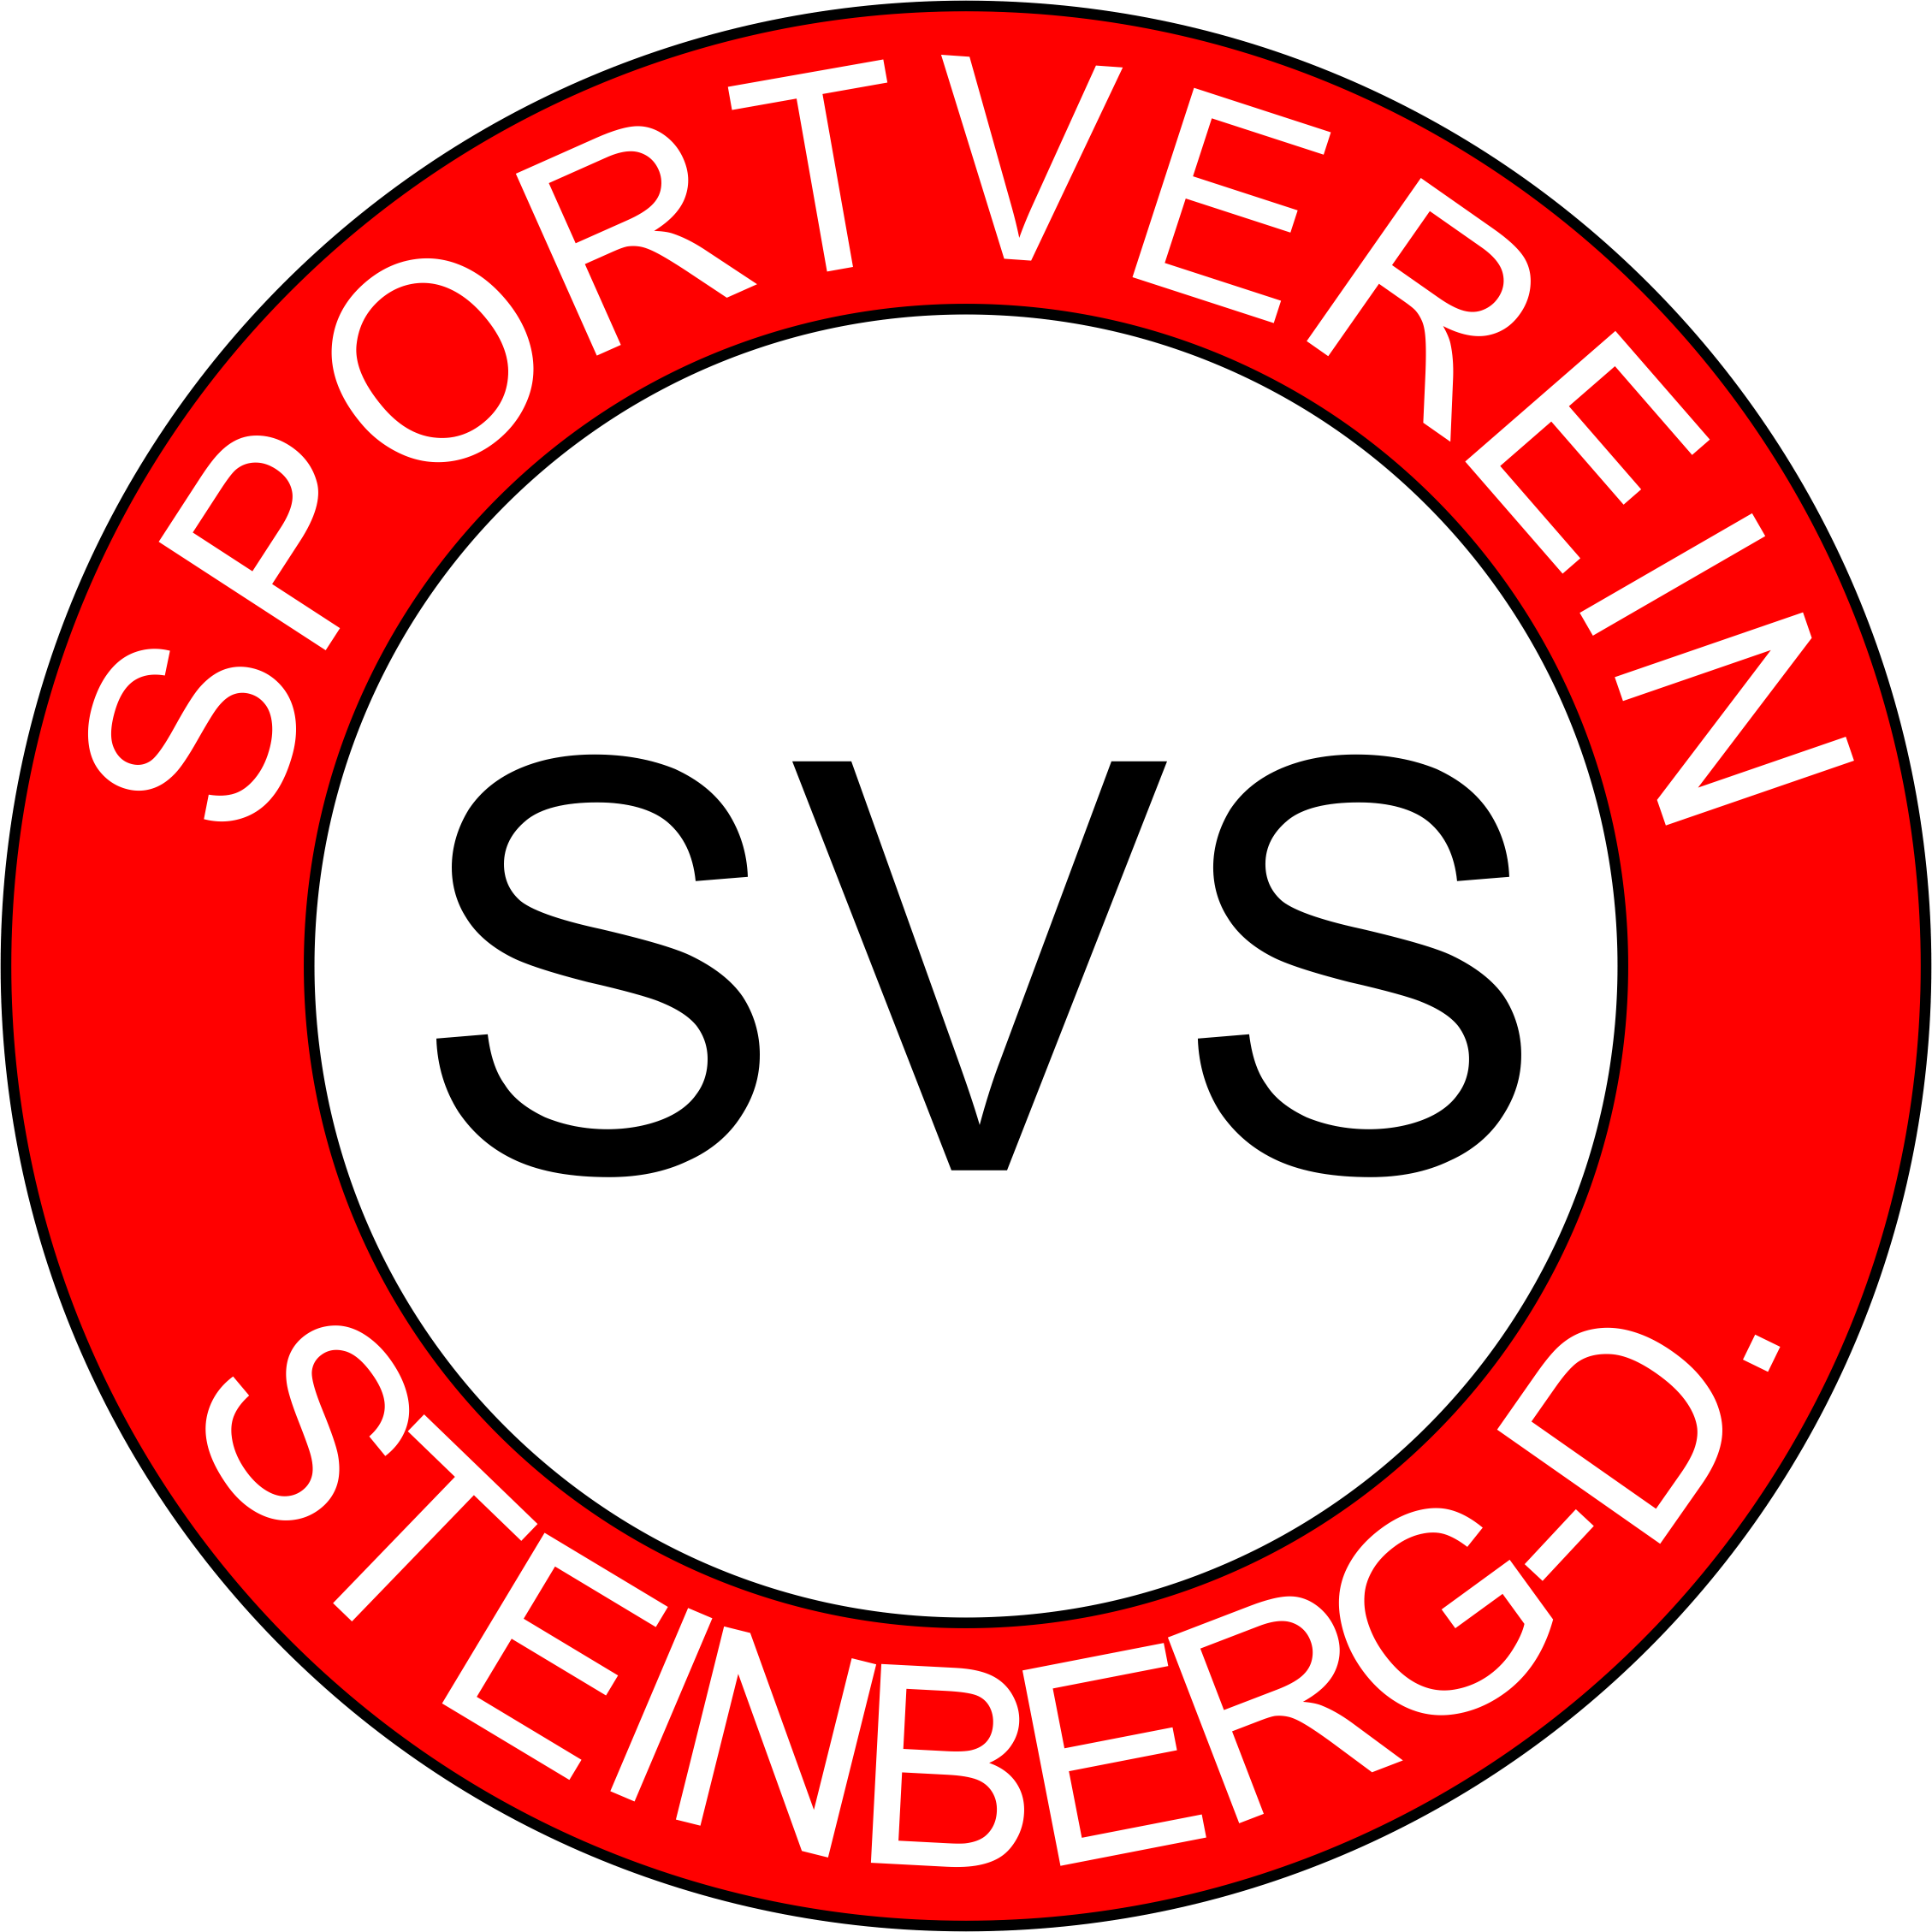 Profilbild des Vereins SV Steinberg/Deckenhardt